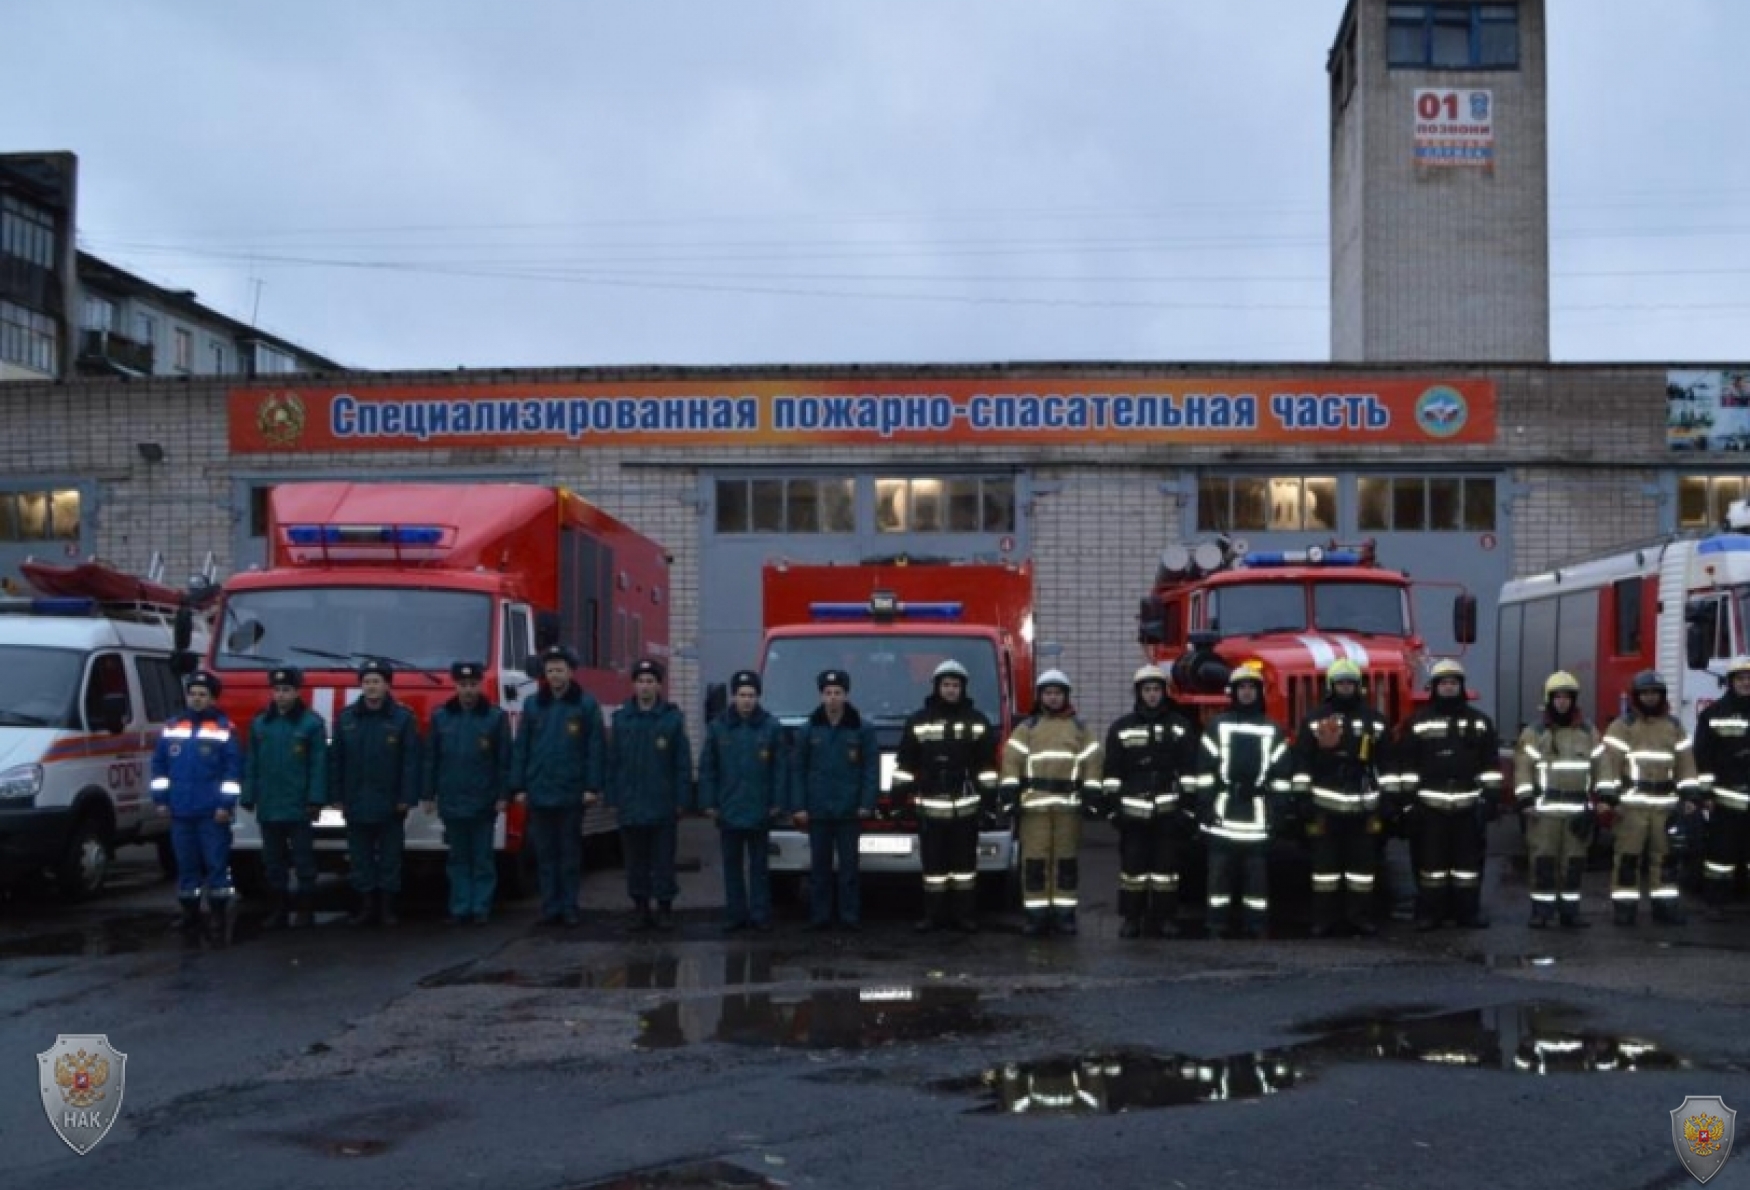 Оперативным штабом в Новгородской области проведено командно-штабное учение под условным наименованием «Рельеф-2017»